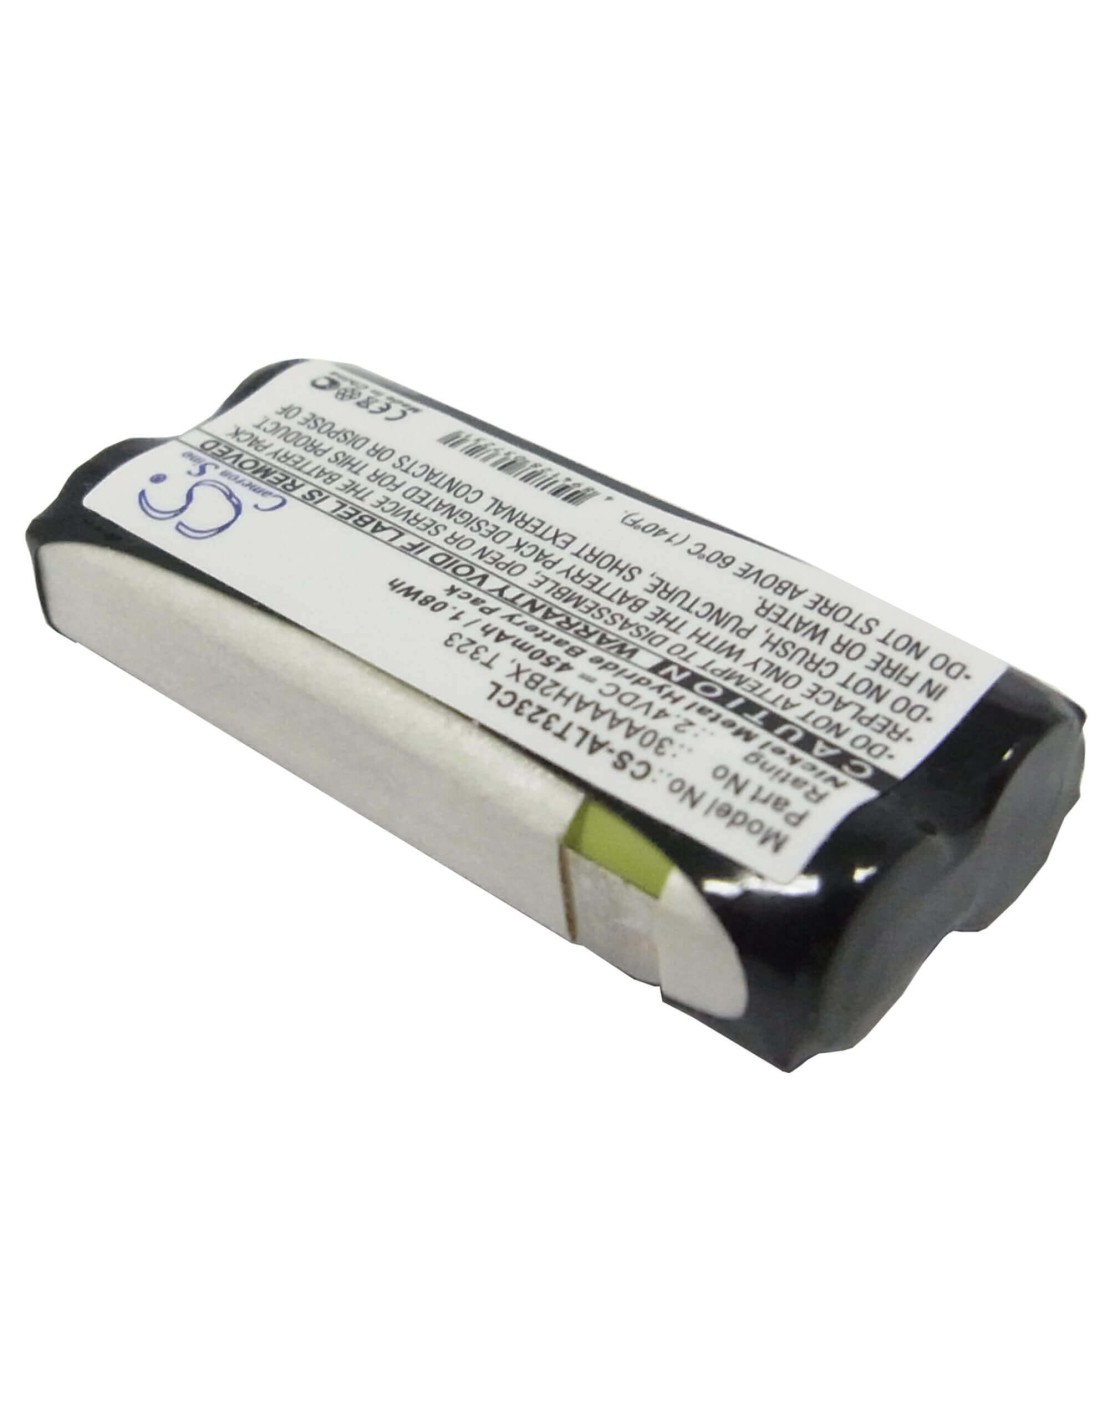 Battery for Switel, D-7000 2.4V, 450mAh - 1.08Wh